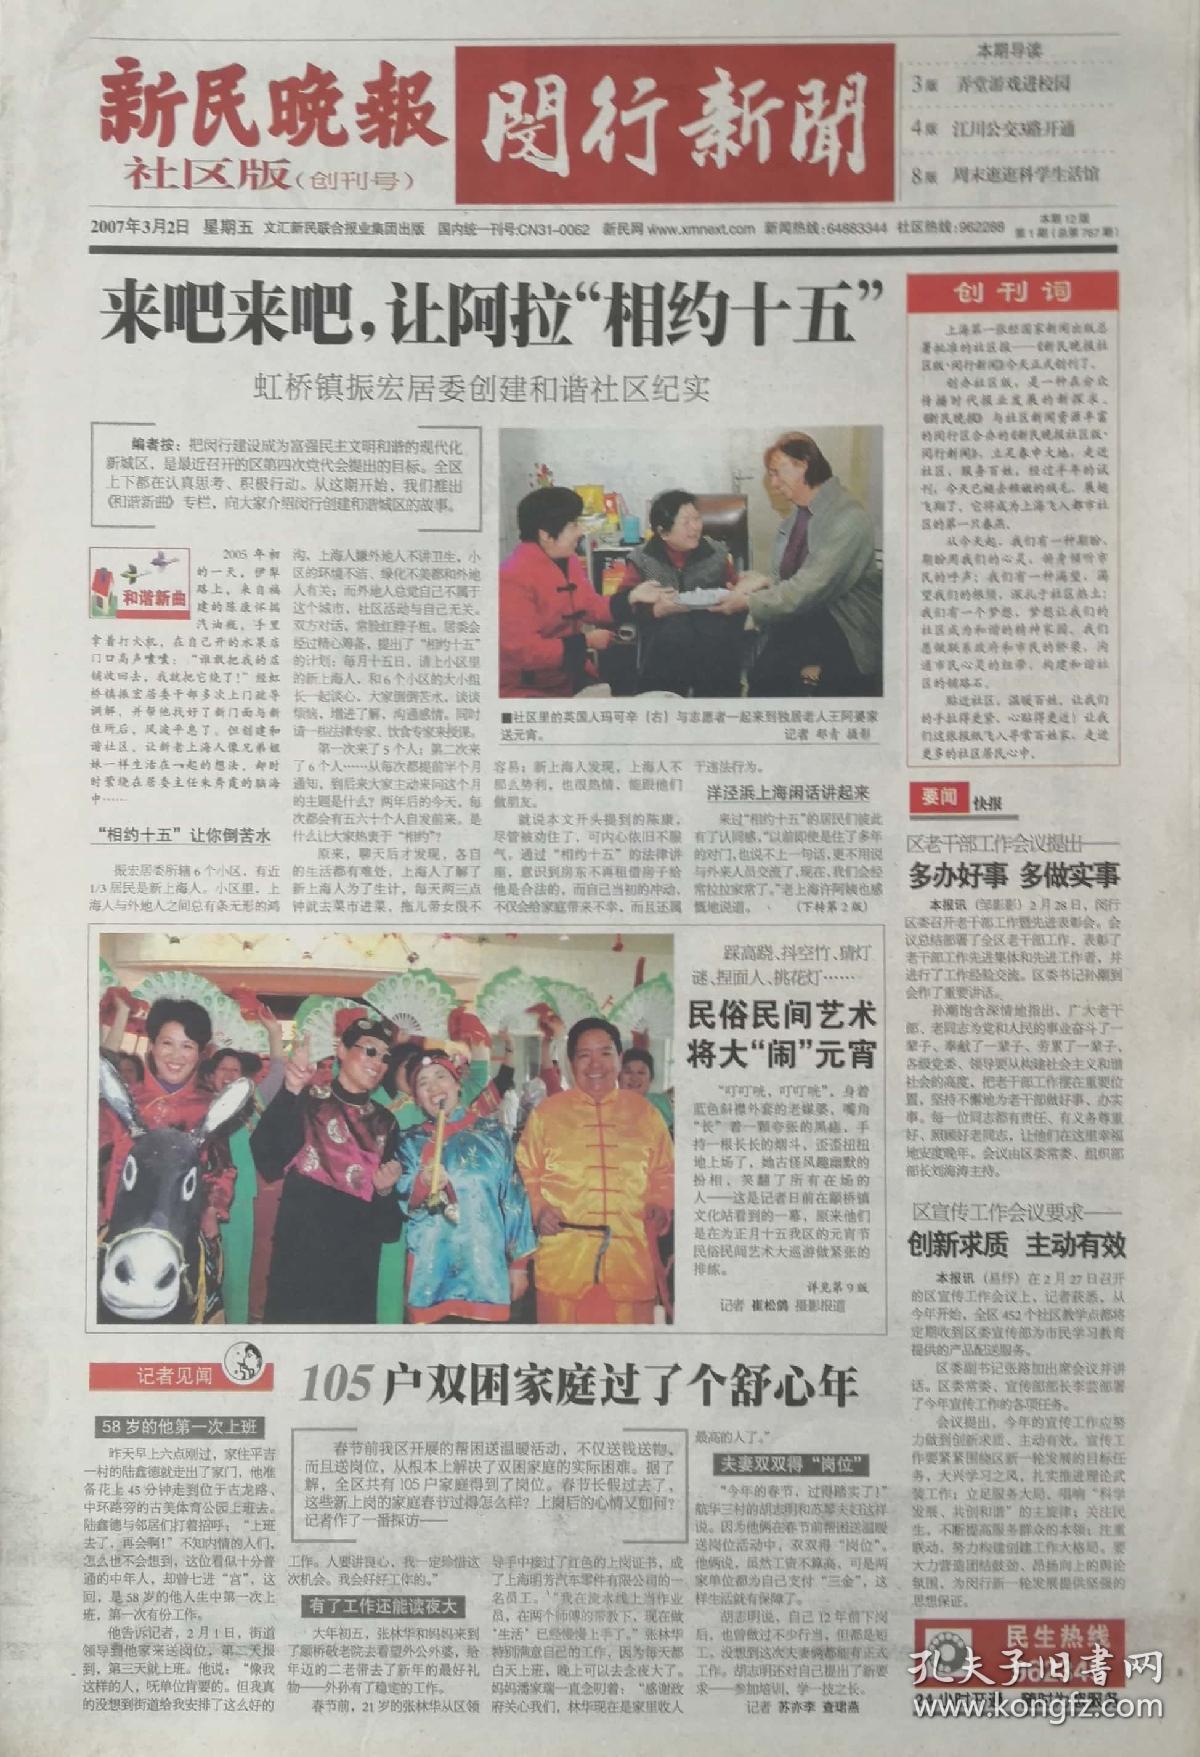 新民晚报社区版    闵行新闻

试刊号     2097年1月17日

创刊号     2007年3月2日    

两份一套

上海闵行区党报